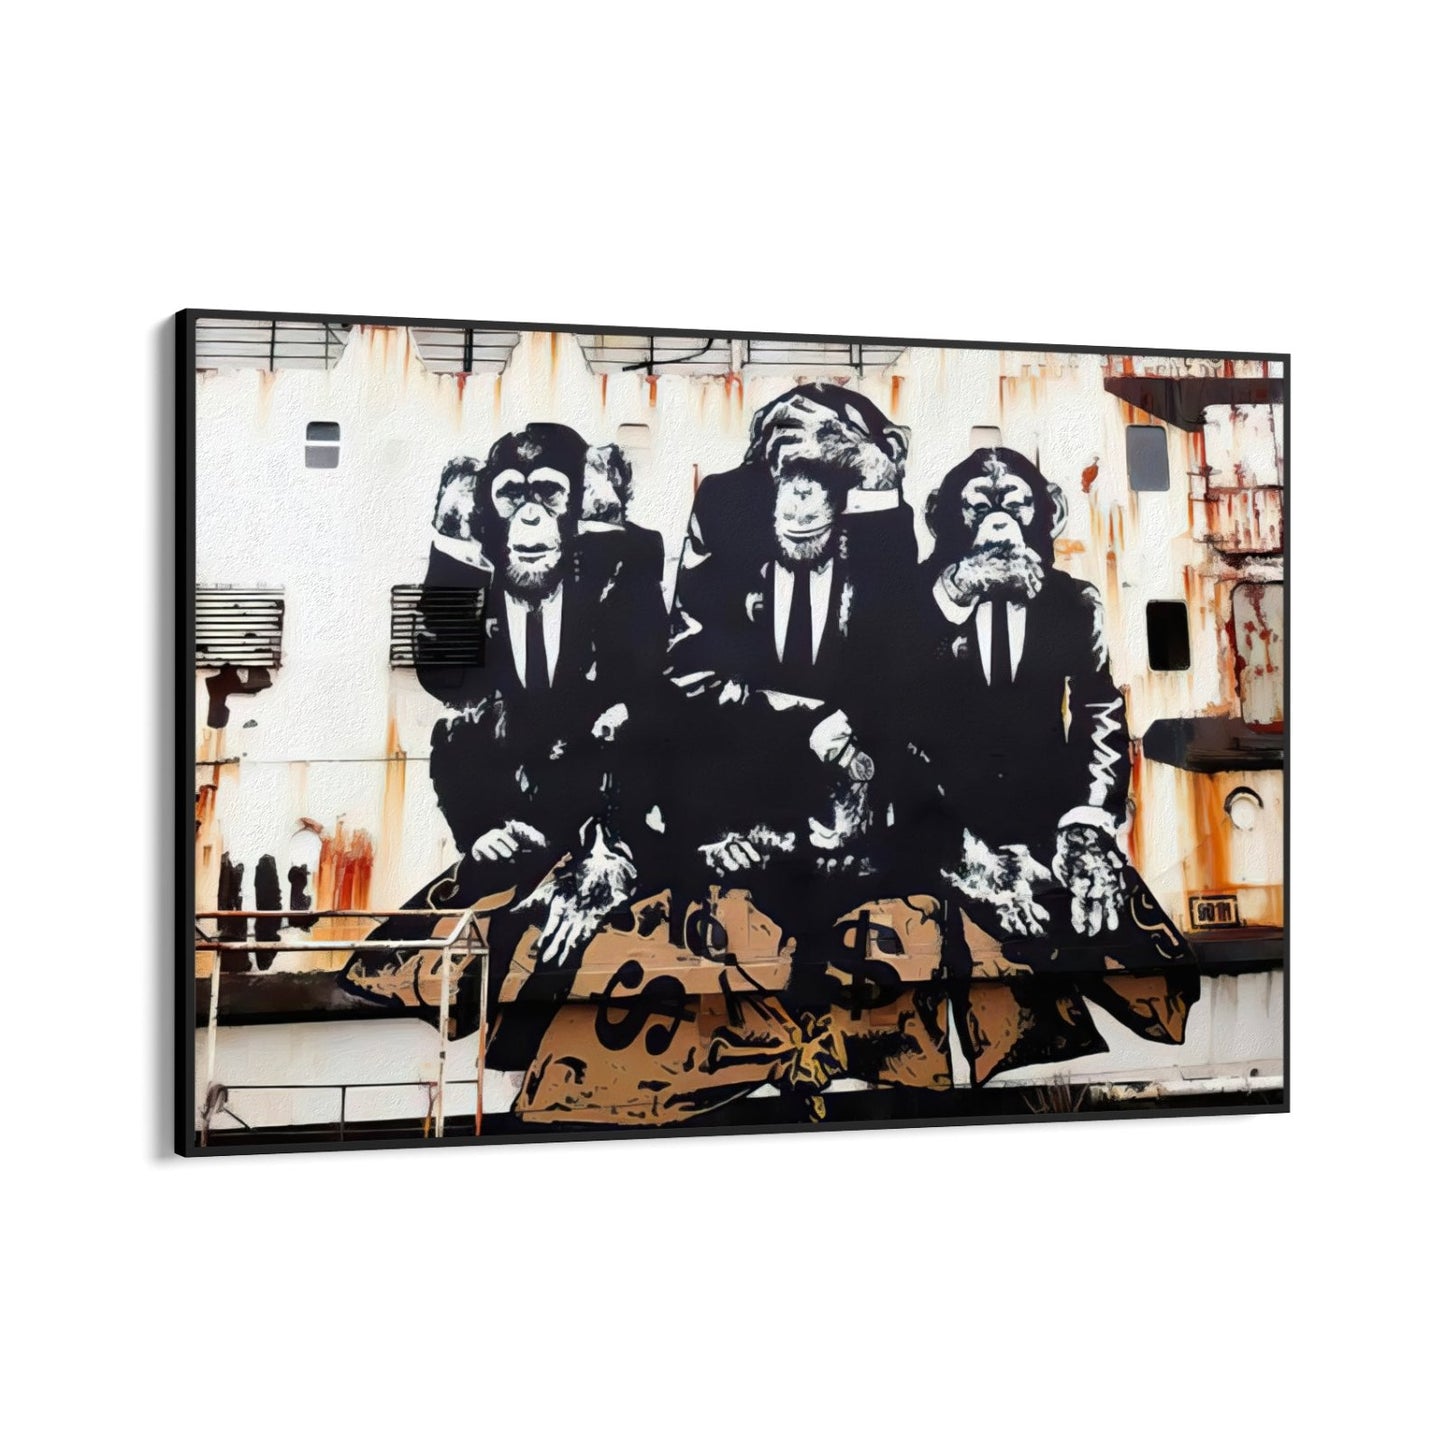 Három üzleti majom, Banksy